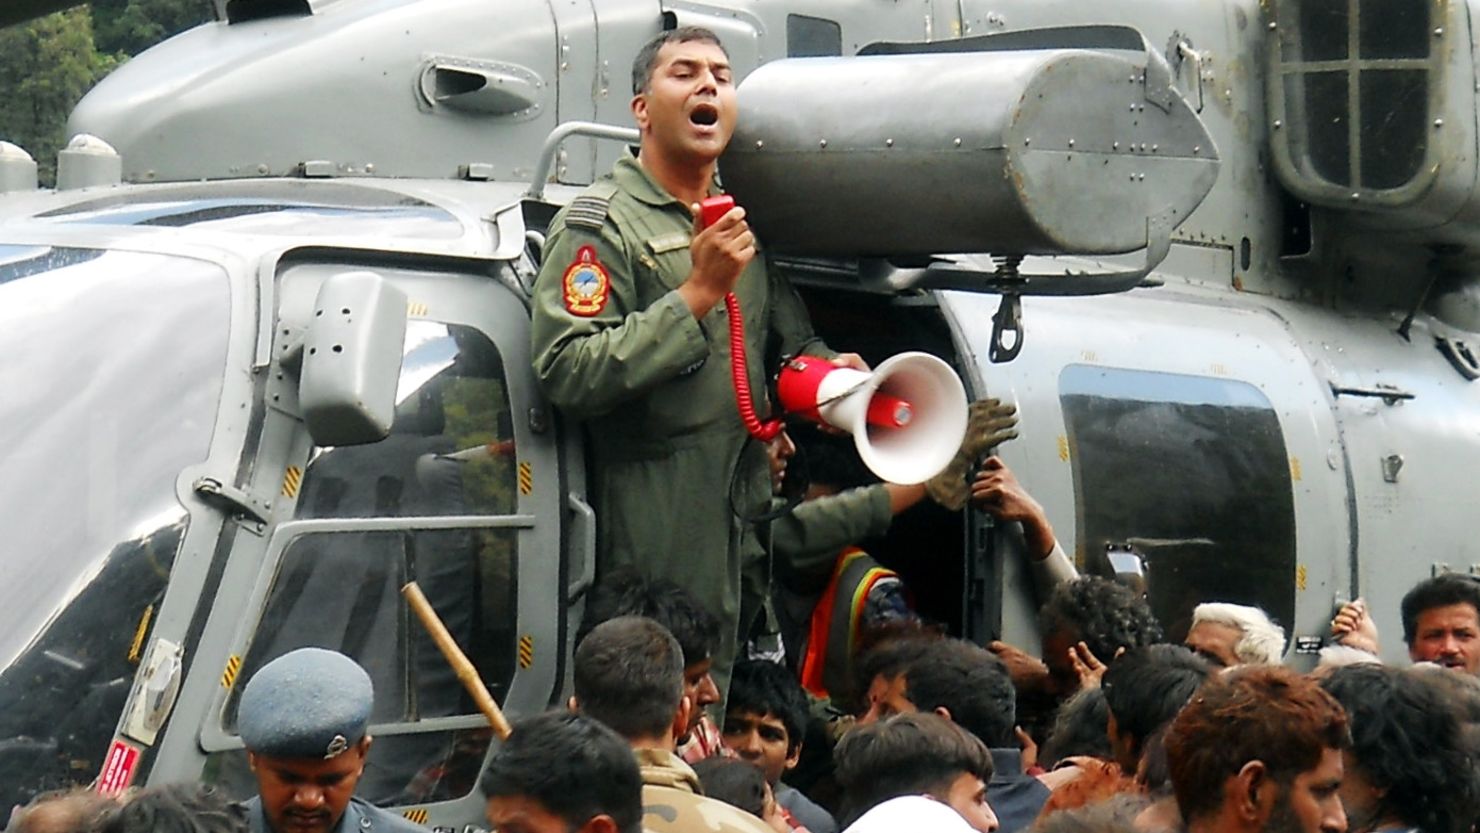 Helicopter rescues pilgrims stranded because of heavy flooding near Kedarnath, Uttarakhand on June 24, 2013.